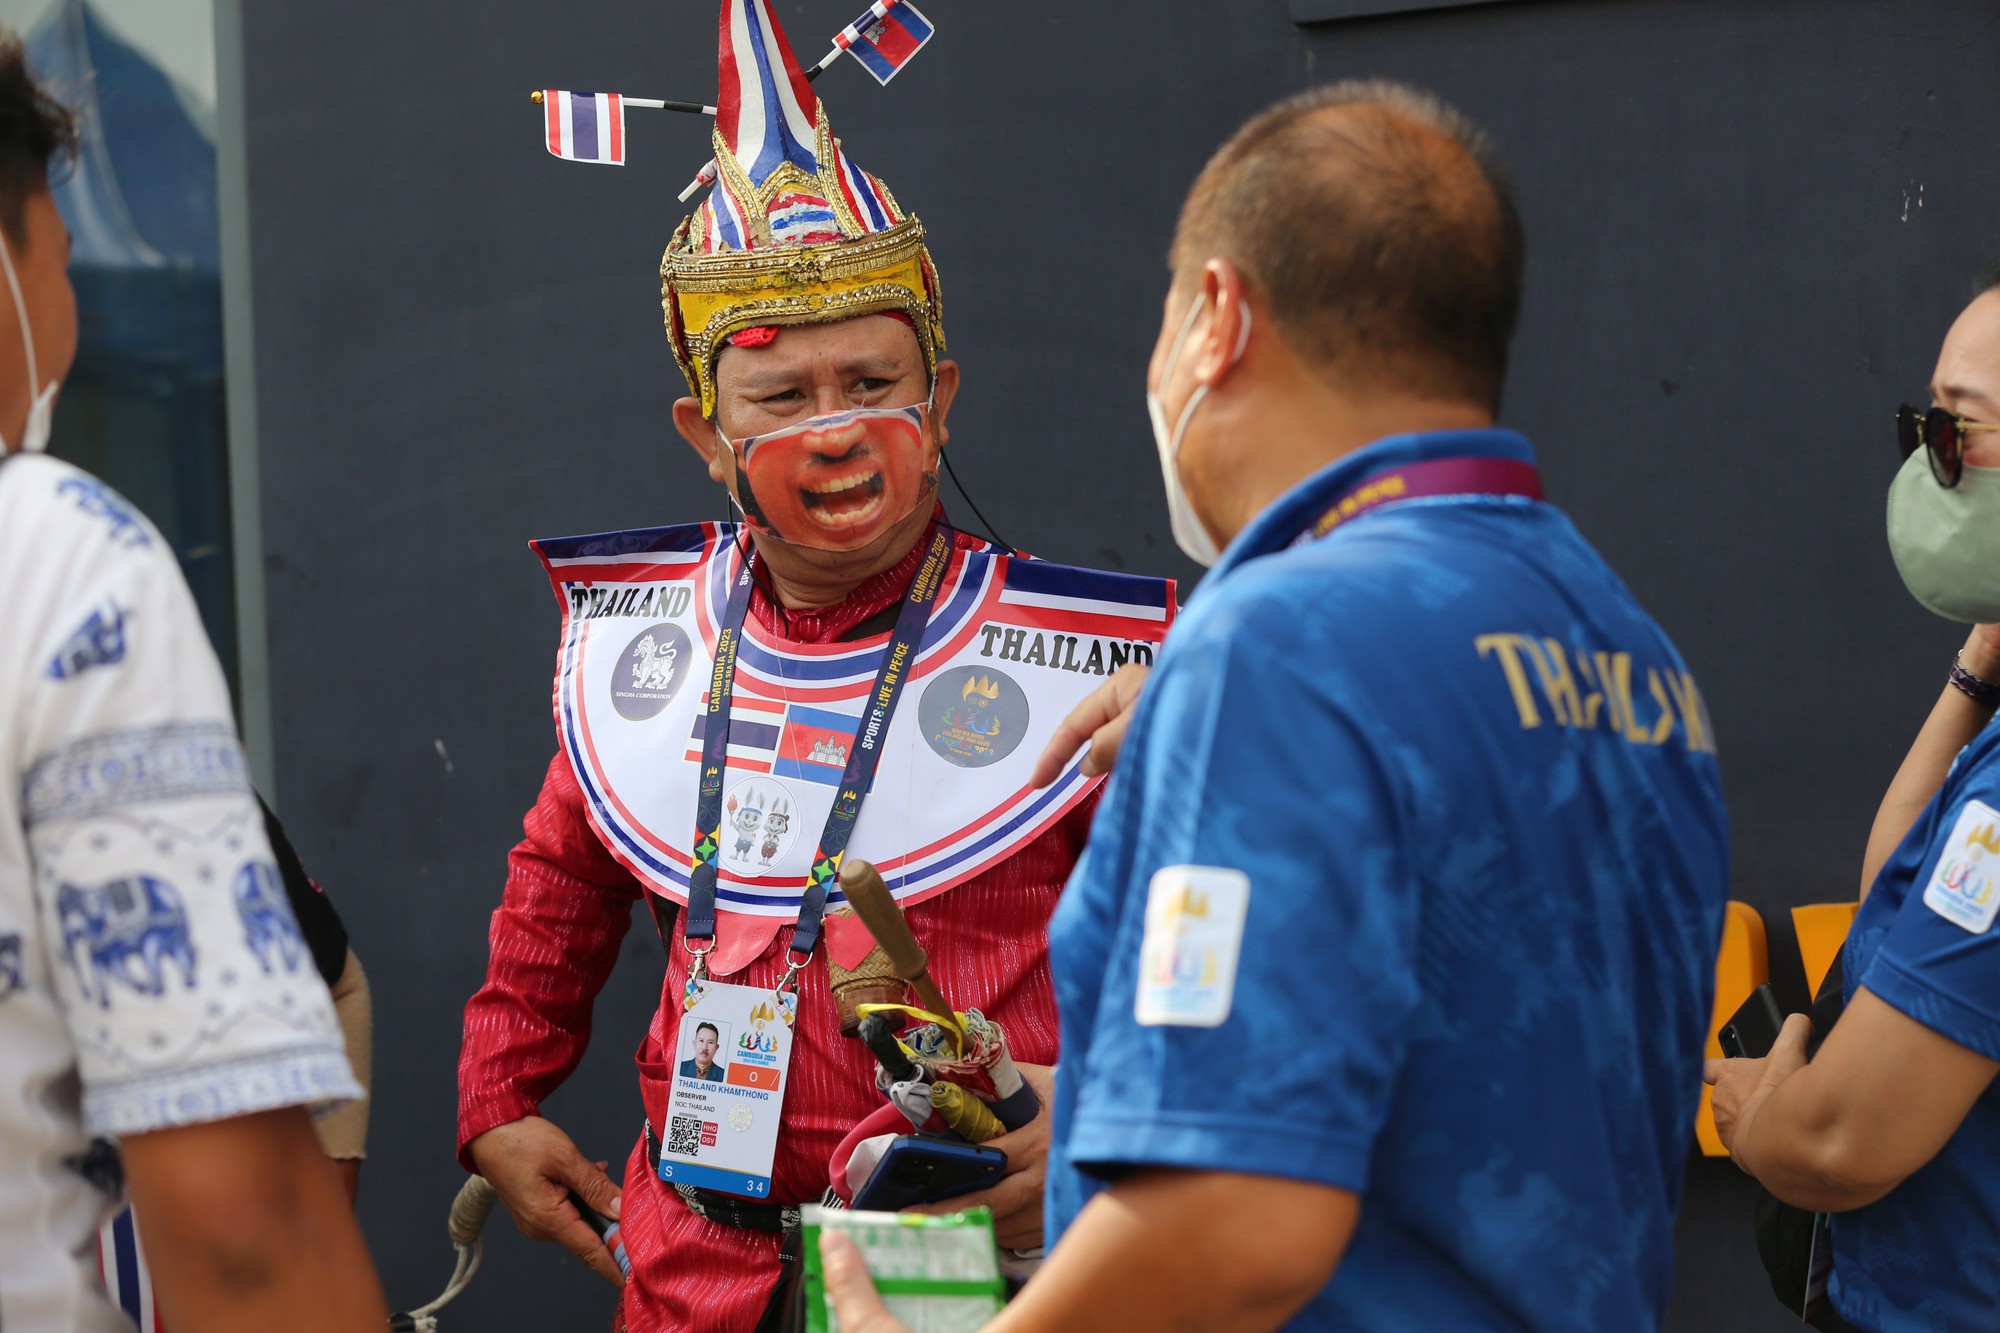 An ninh Campuchia cấm CĐV Thái Lan mang trống vào sân cổ vũ - Ảnh 4.